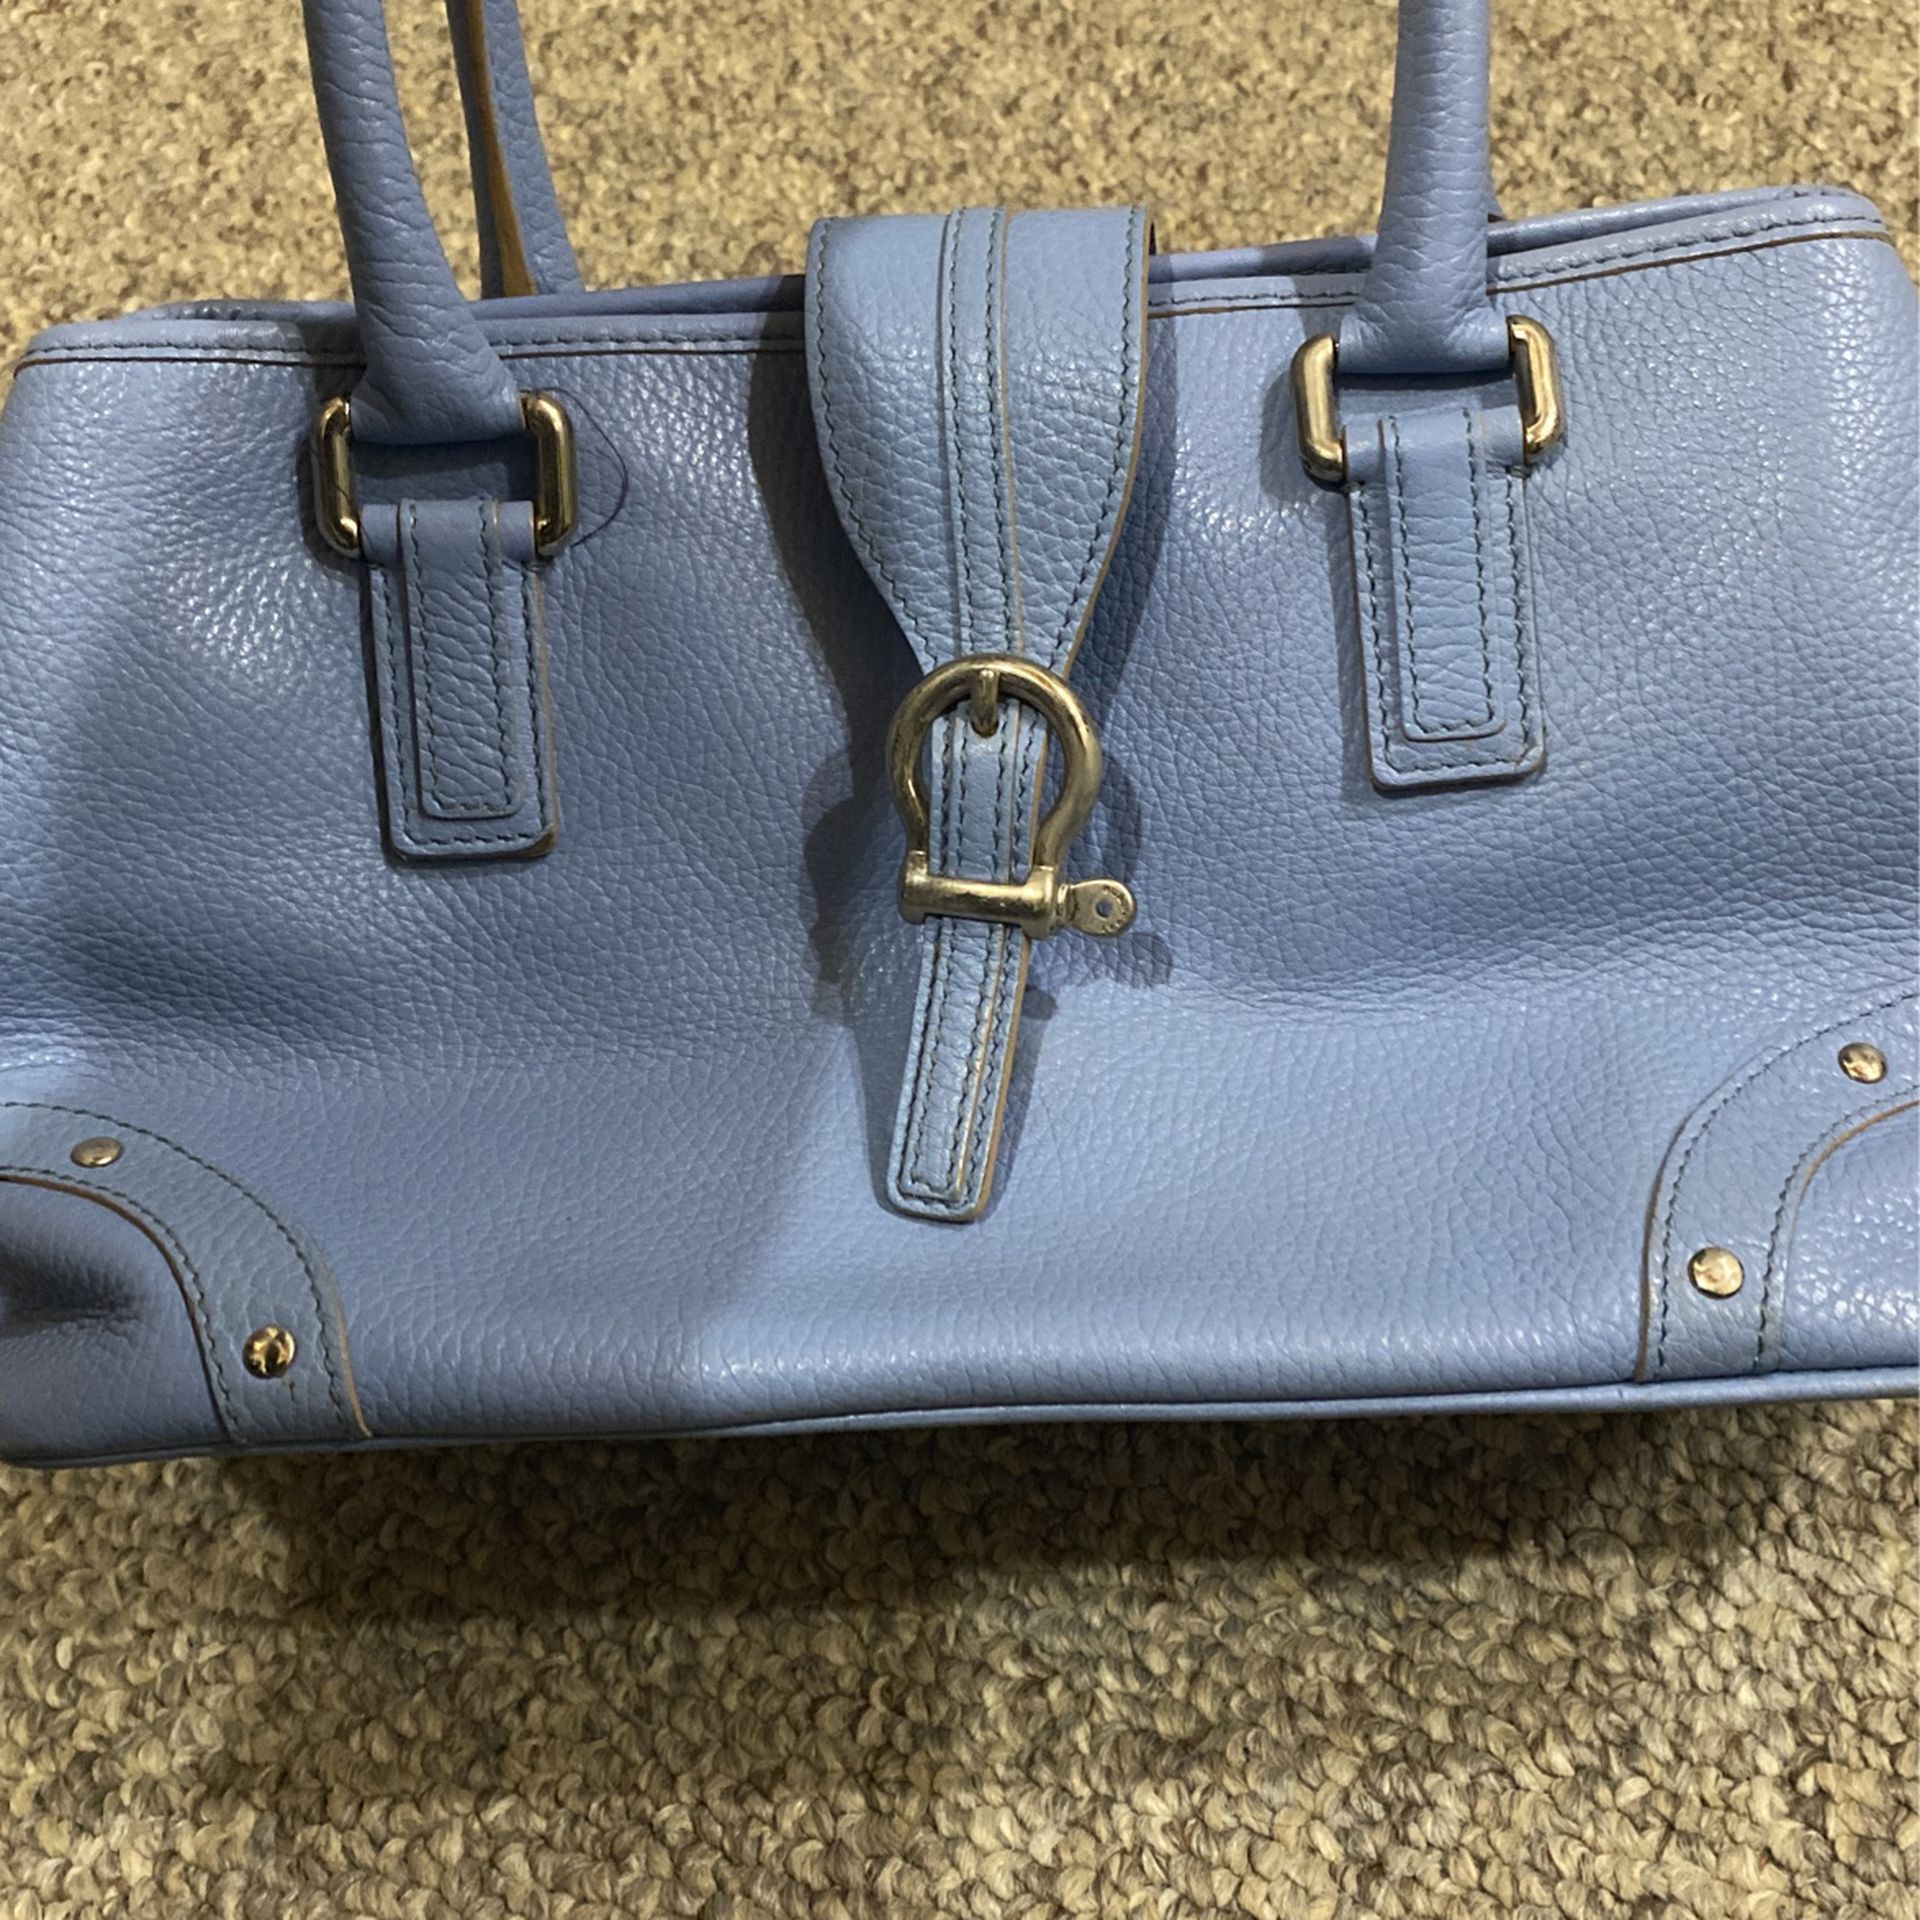  Vintage Baby Blue, Burberry Leather Shoulder Bag